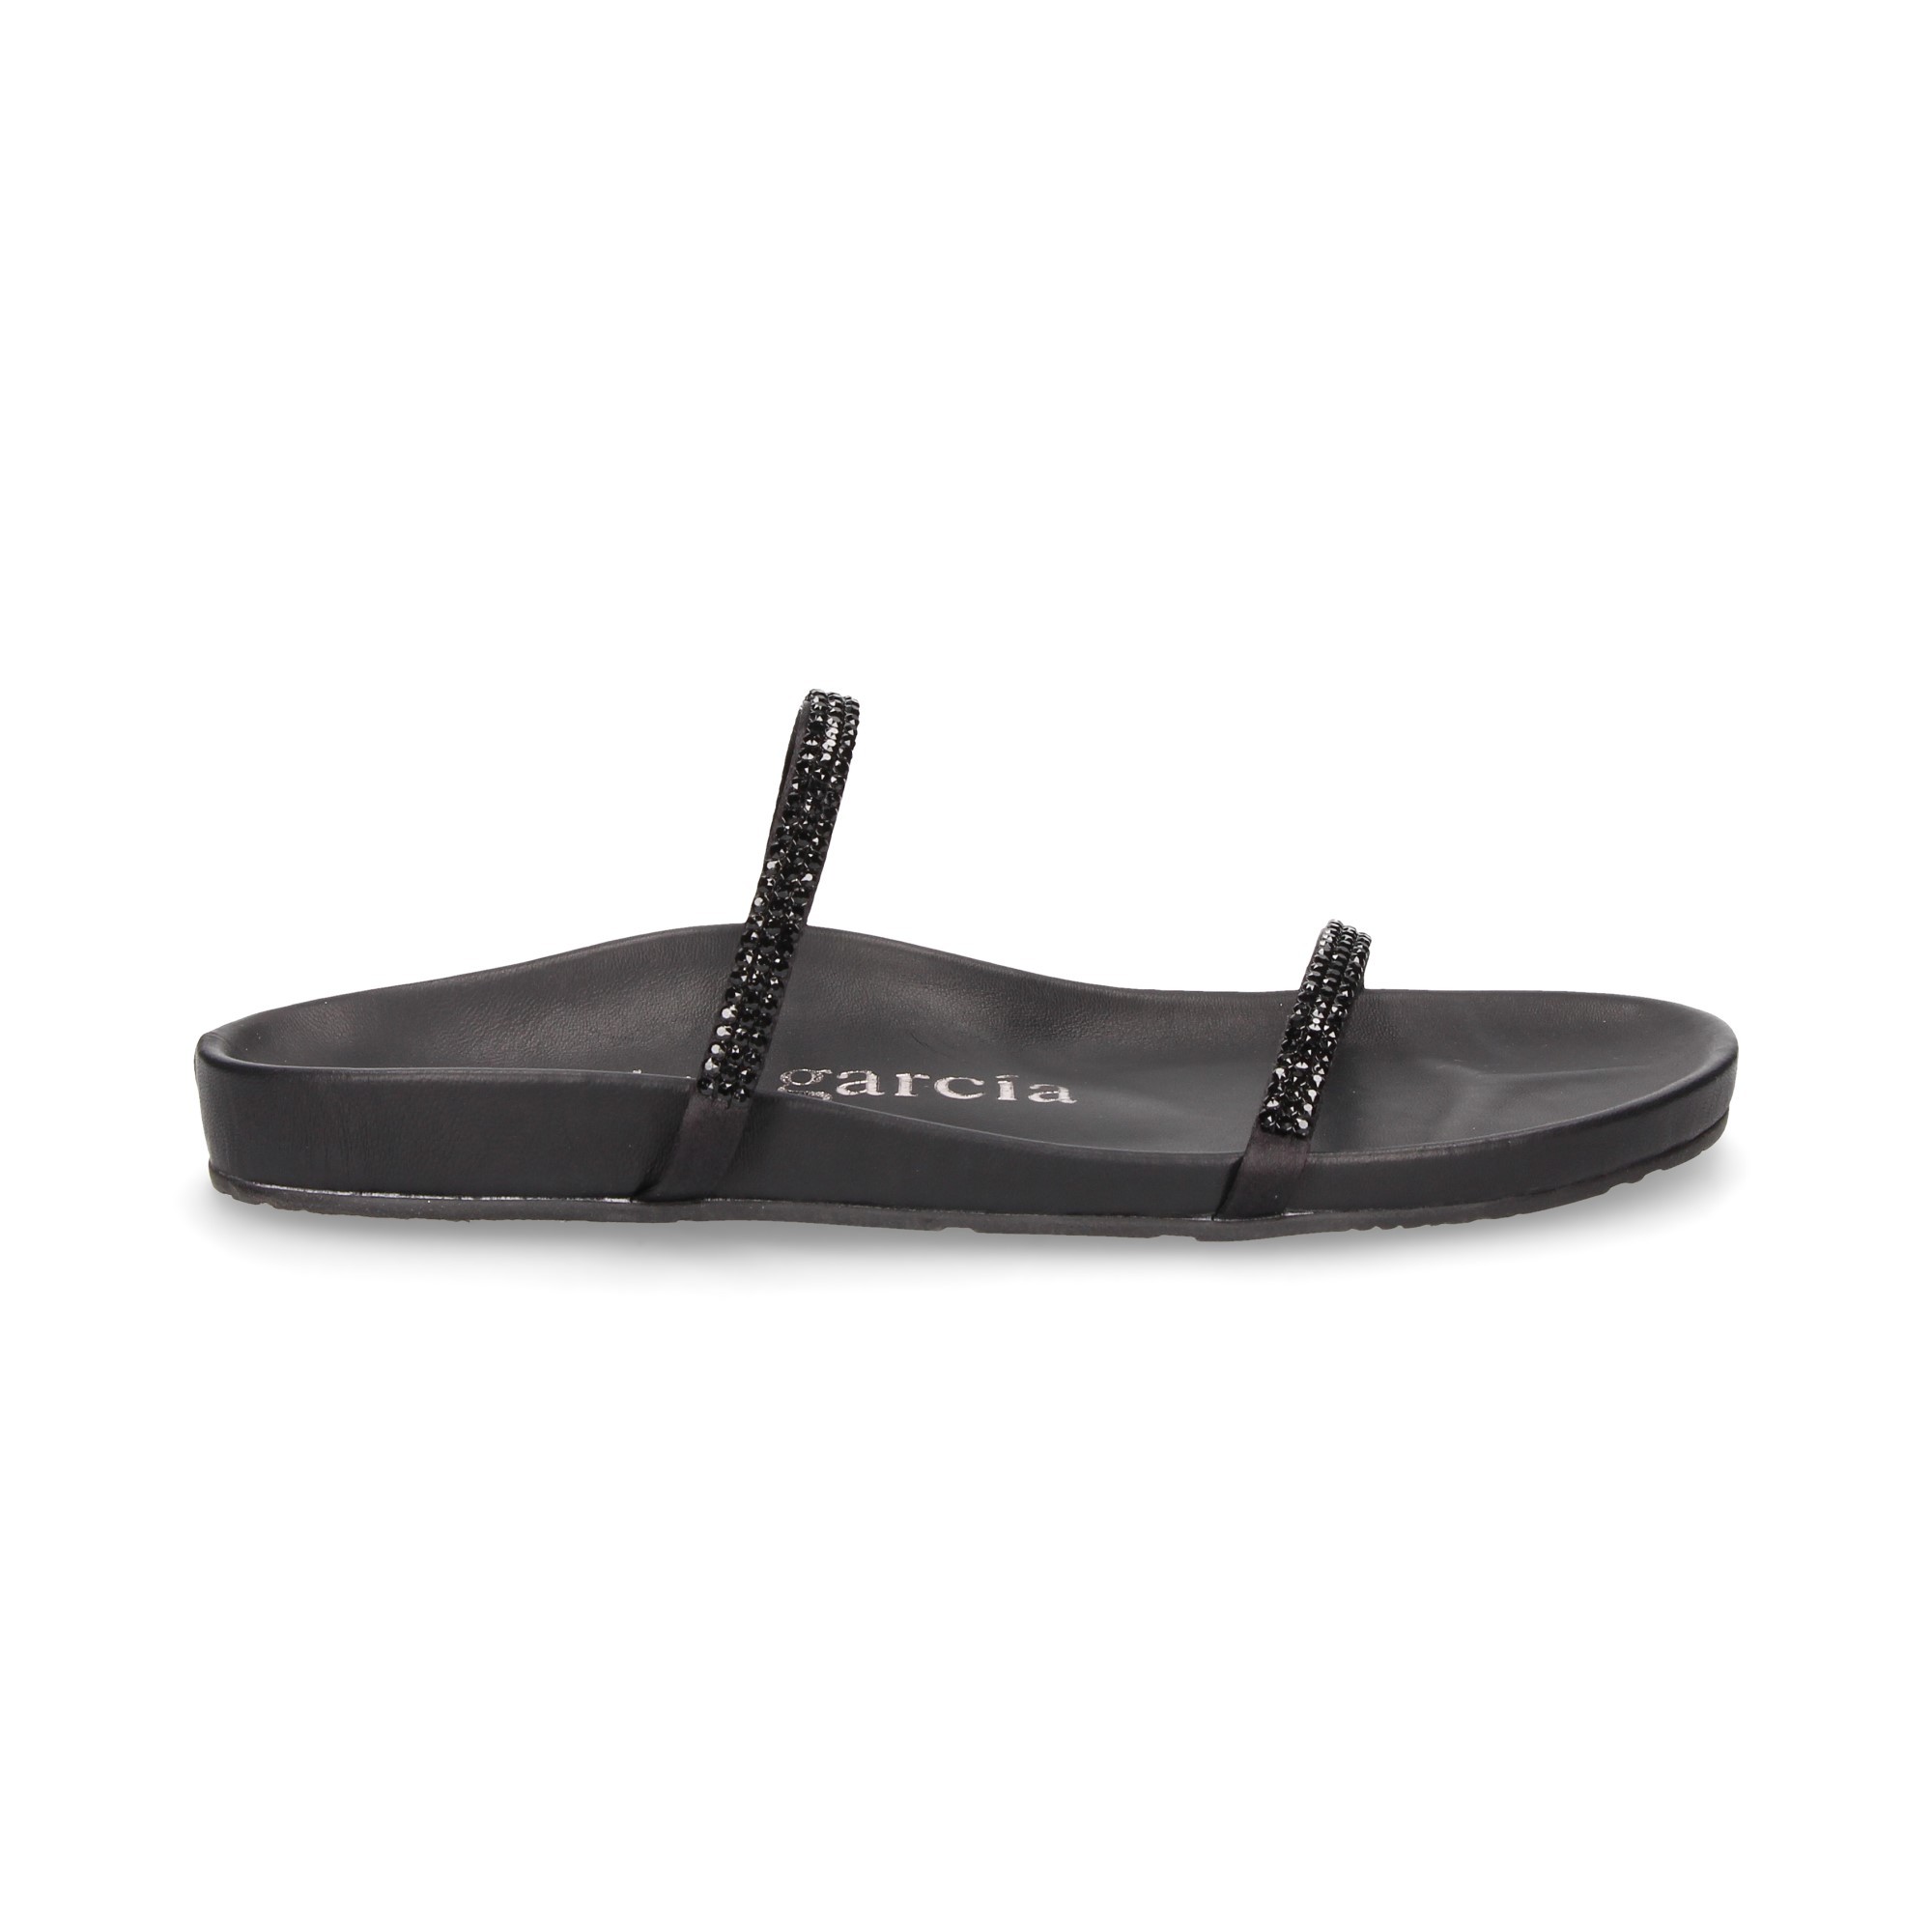 sandal-two-straps-strass-black